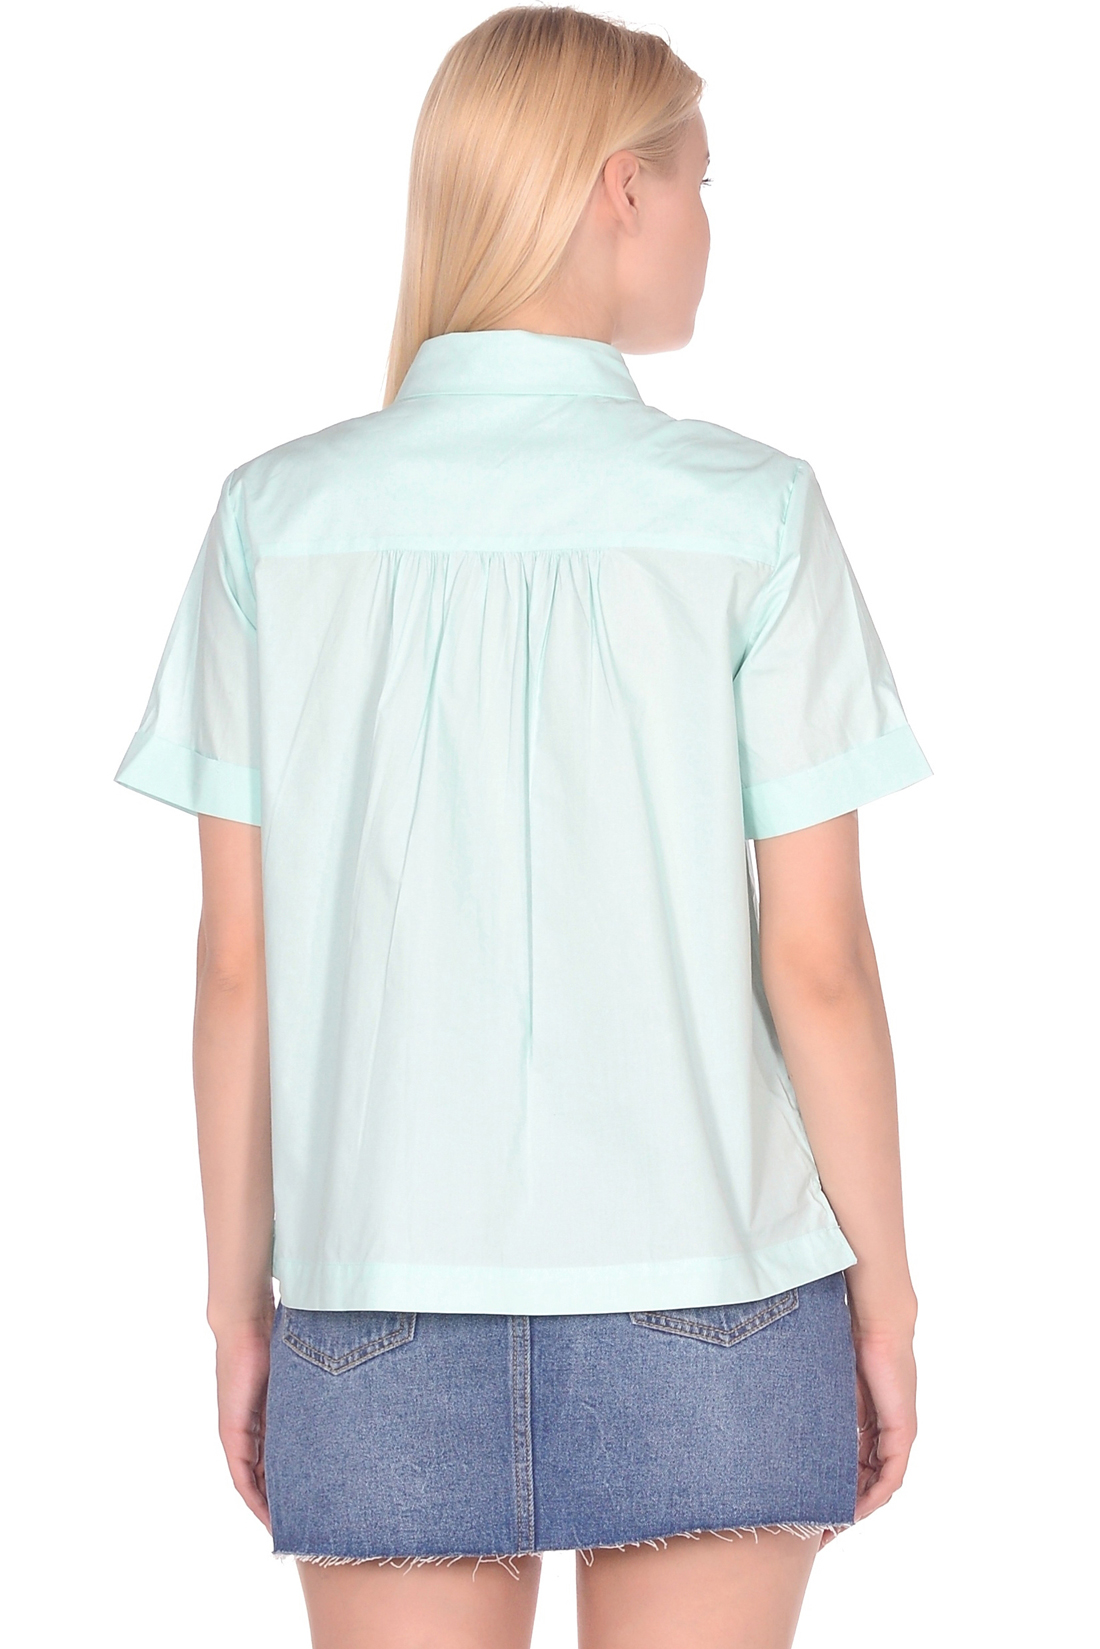 Рубашка женская Baon B199029 голубая L